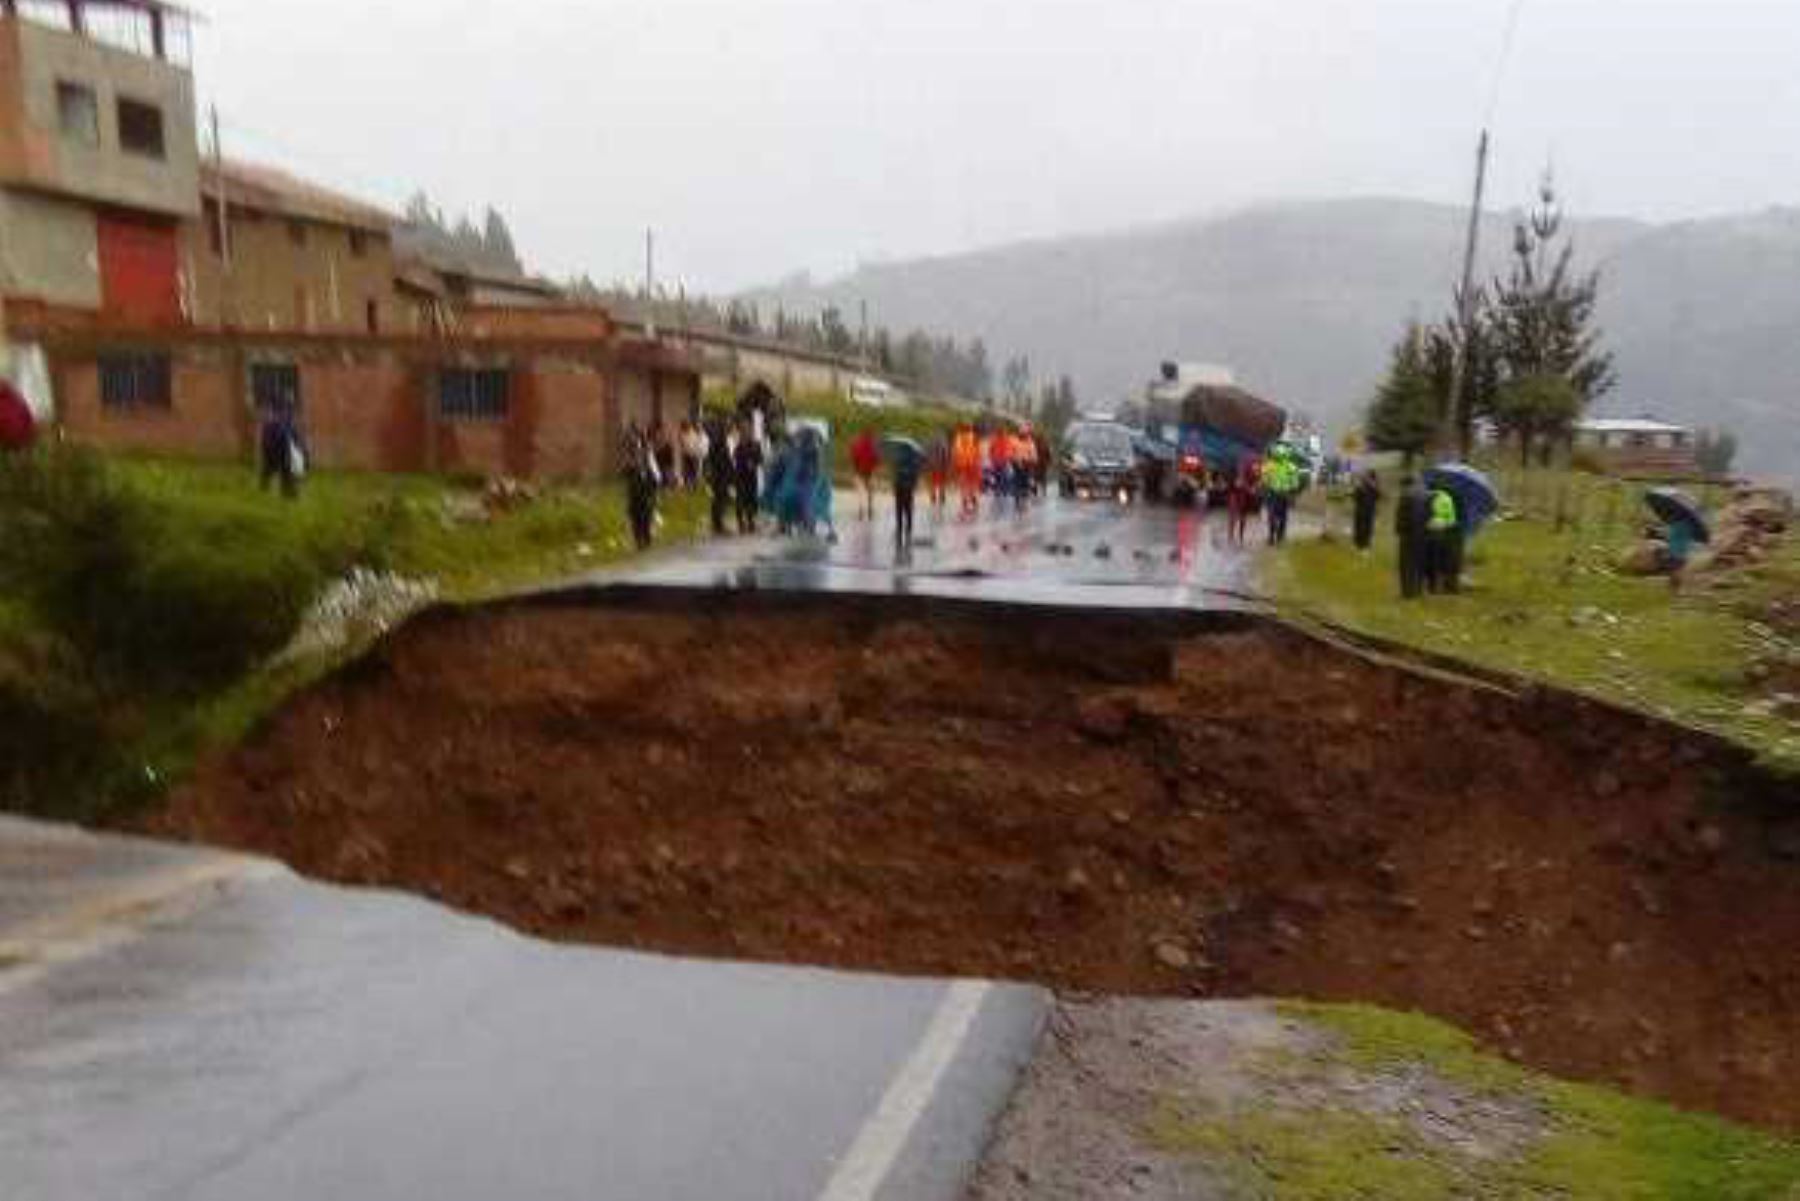 La vía de penetración Pativilca-Huaraz, a la altura de la provincia de Recuay en Áncash, continúa intransitable debido al colapso del alfastado de esta carretera, debido a la activación de la quebrada Sipchoc como consecuencia de las intensas lluvias que se registran en la zona.